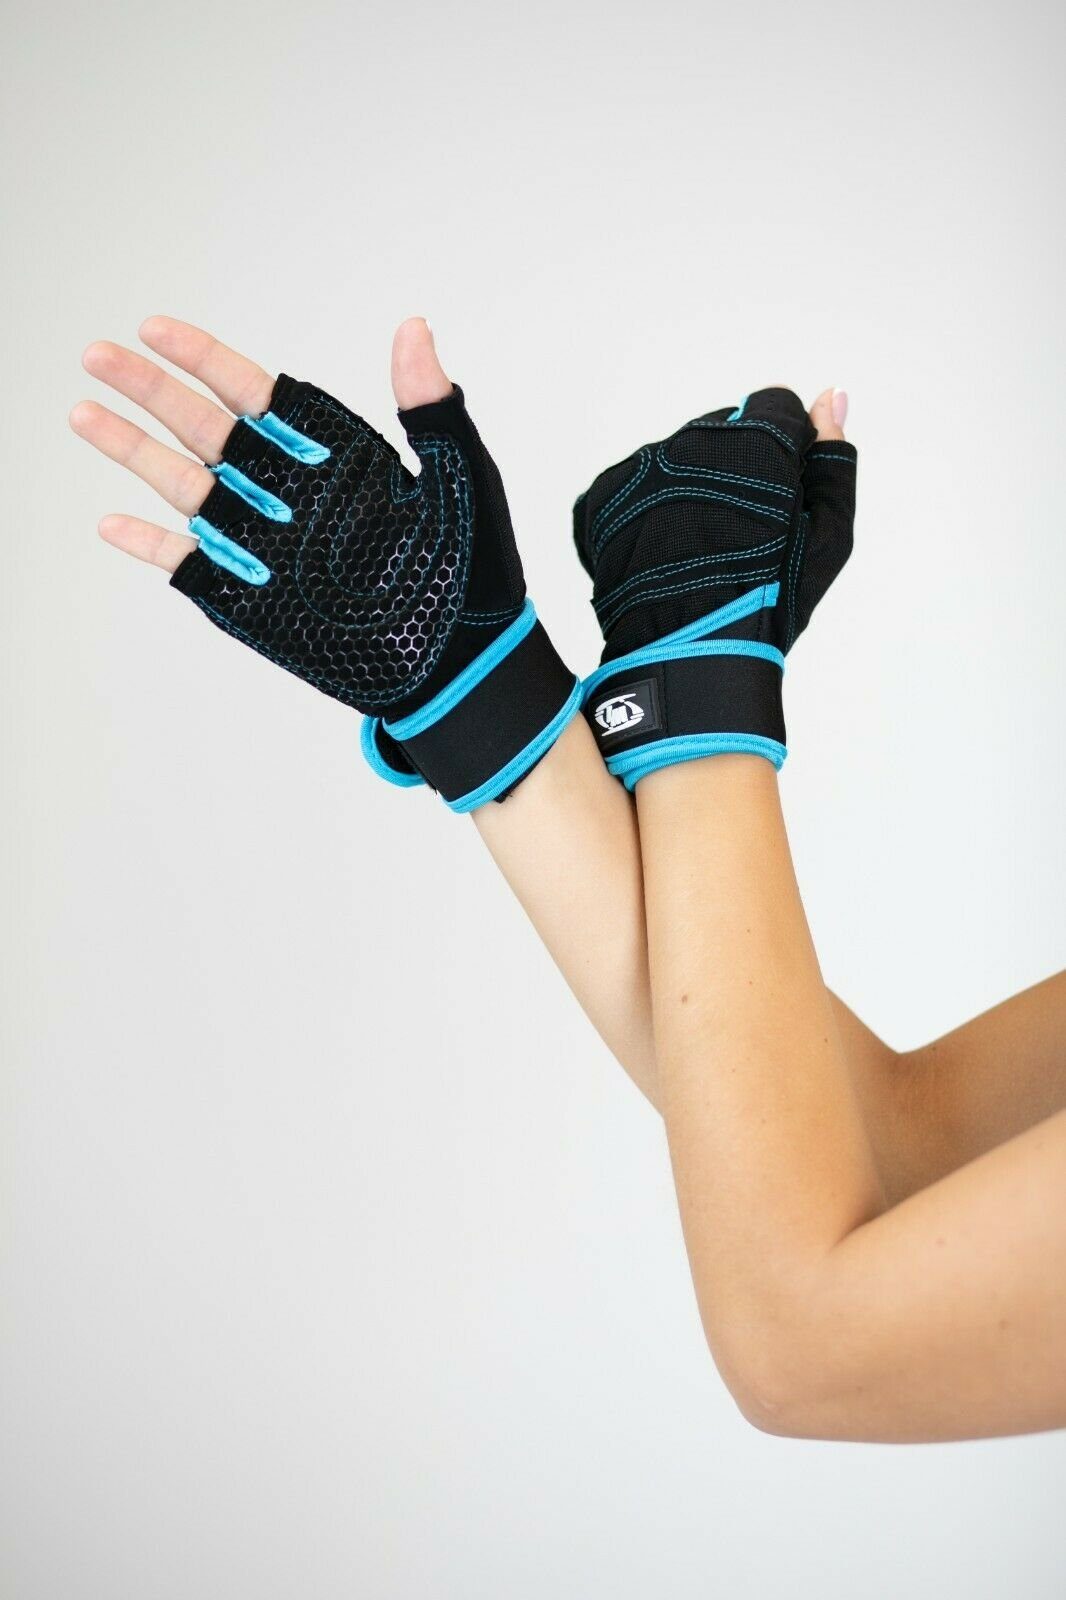 Lorey Medtec Multisporthandschuhe Hochwertige Fitness Handschuhe,  Fitnesshandschuhe, Trainingshandschuhe